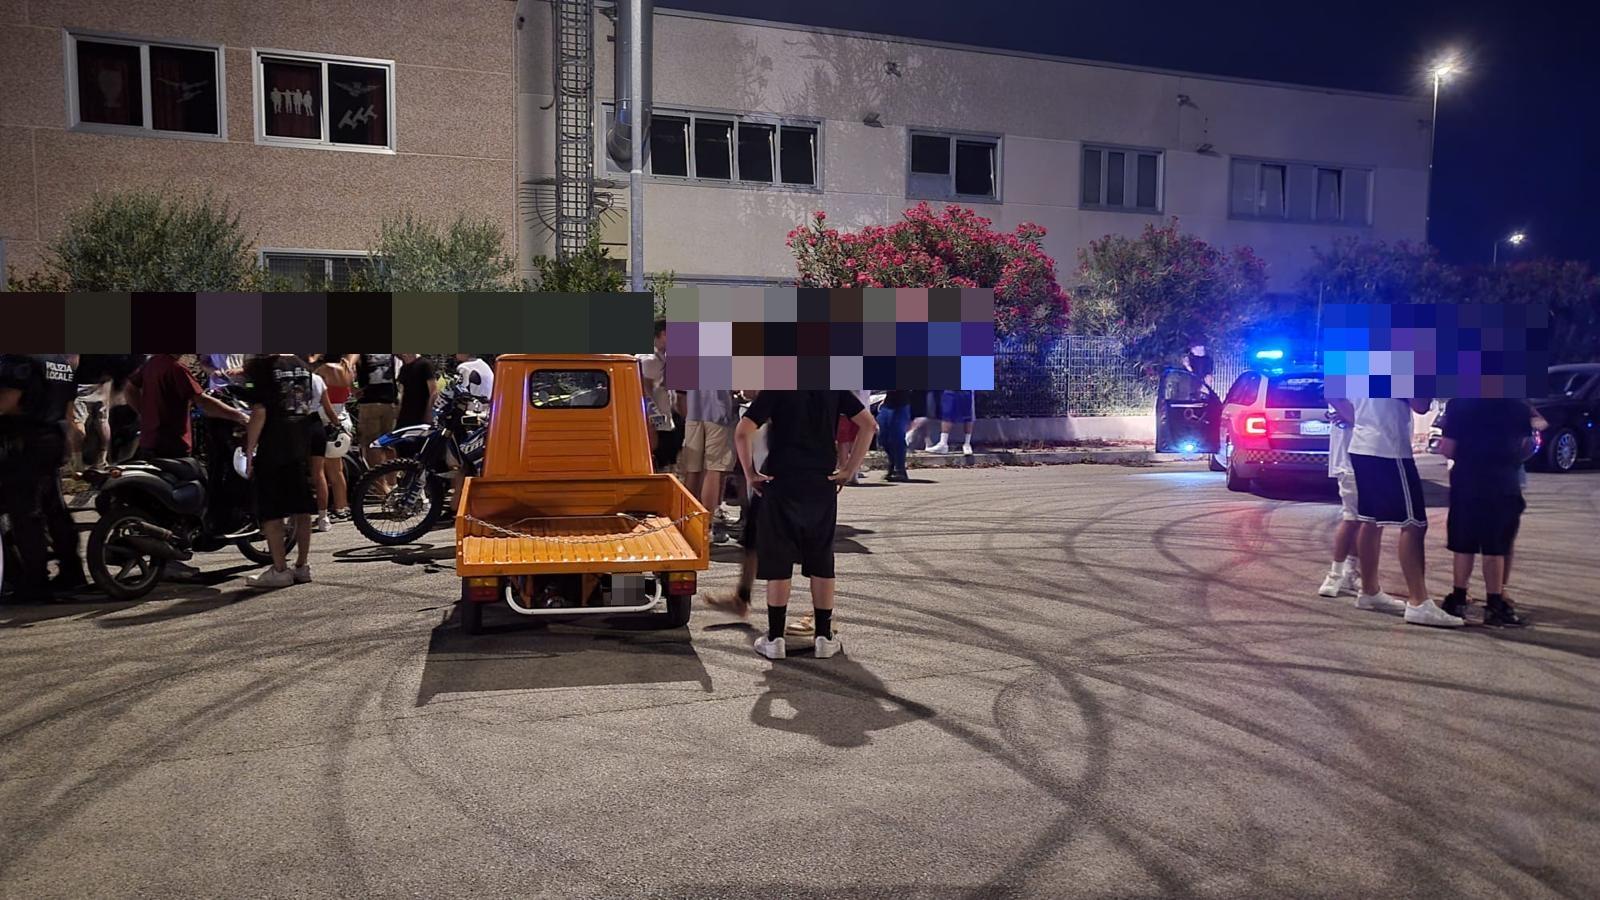 Gare clandestine a Riccione, blitz della polizia stradale: fermati 100 ragazzi